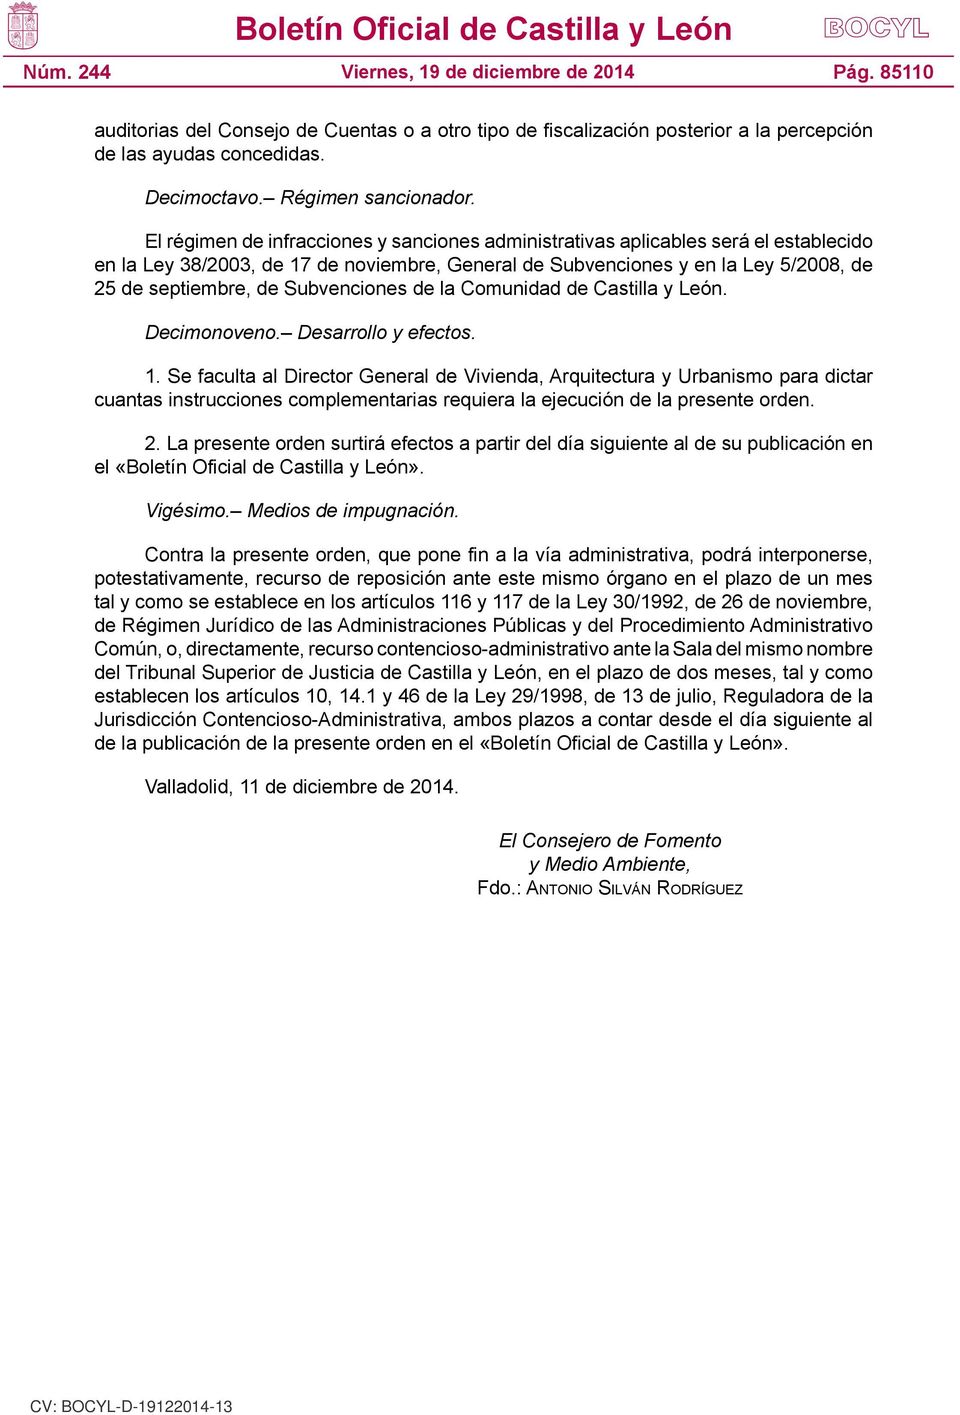 Subvenciones de la Comunidad de Castilla y León. Decimonoveno. Desarrollo y efectos. 1.